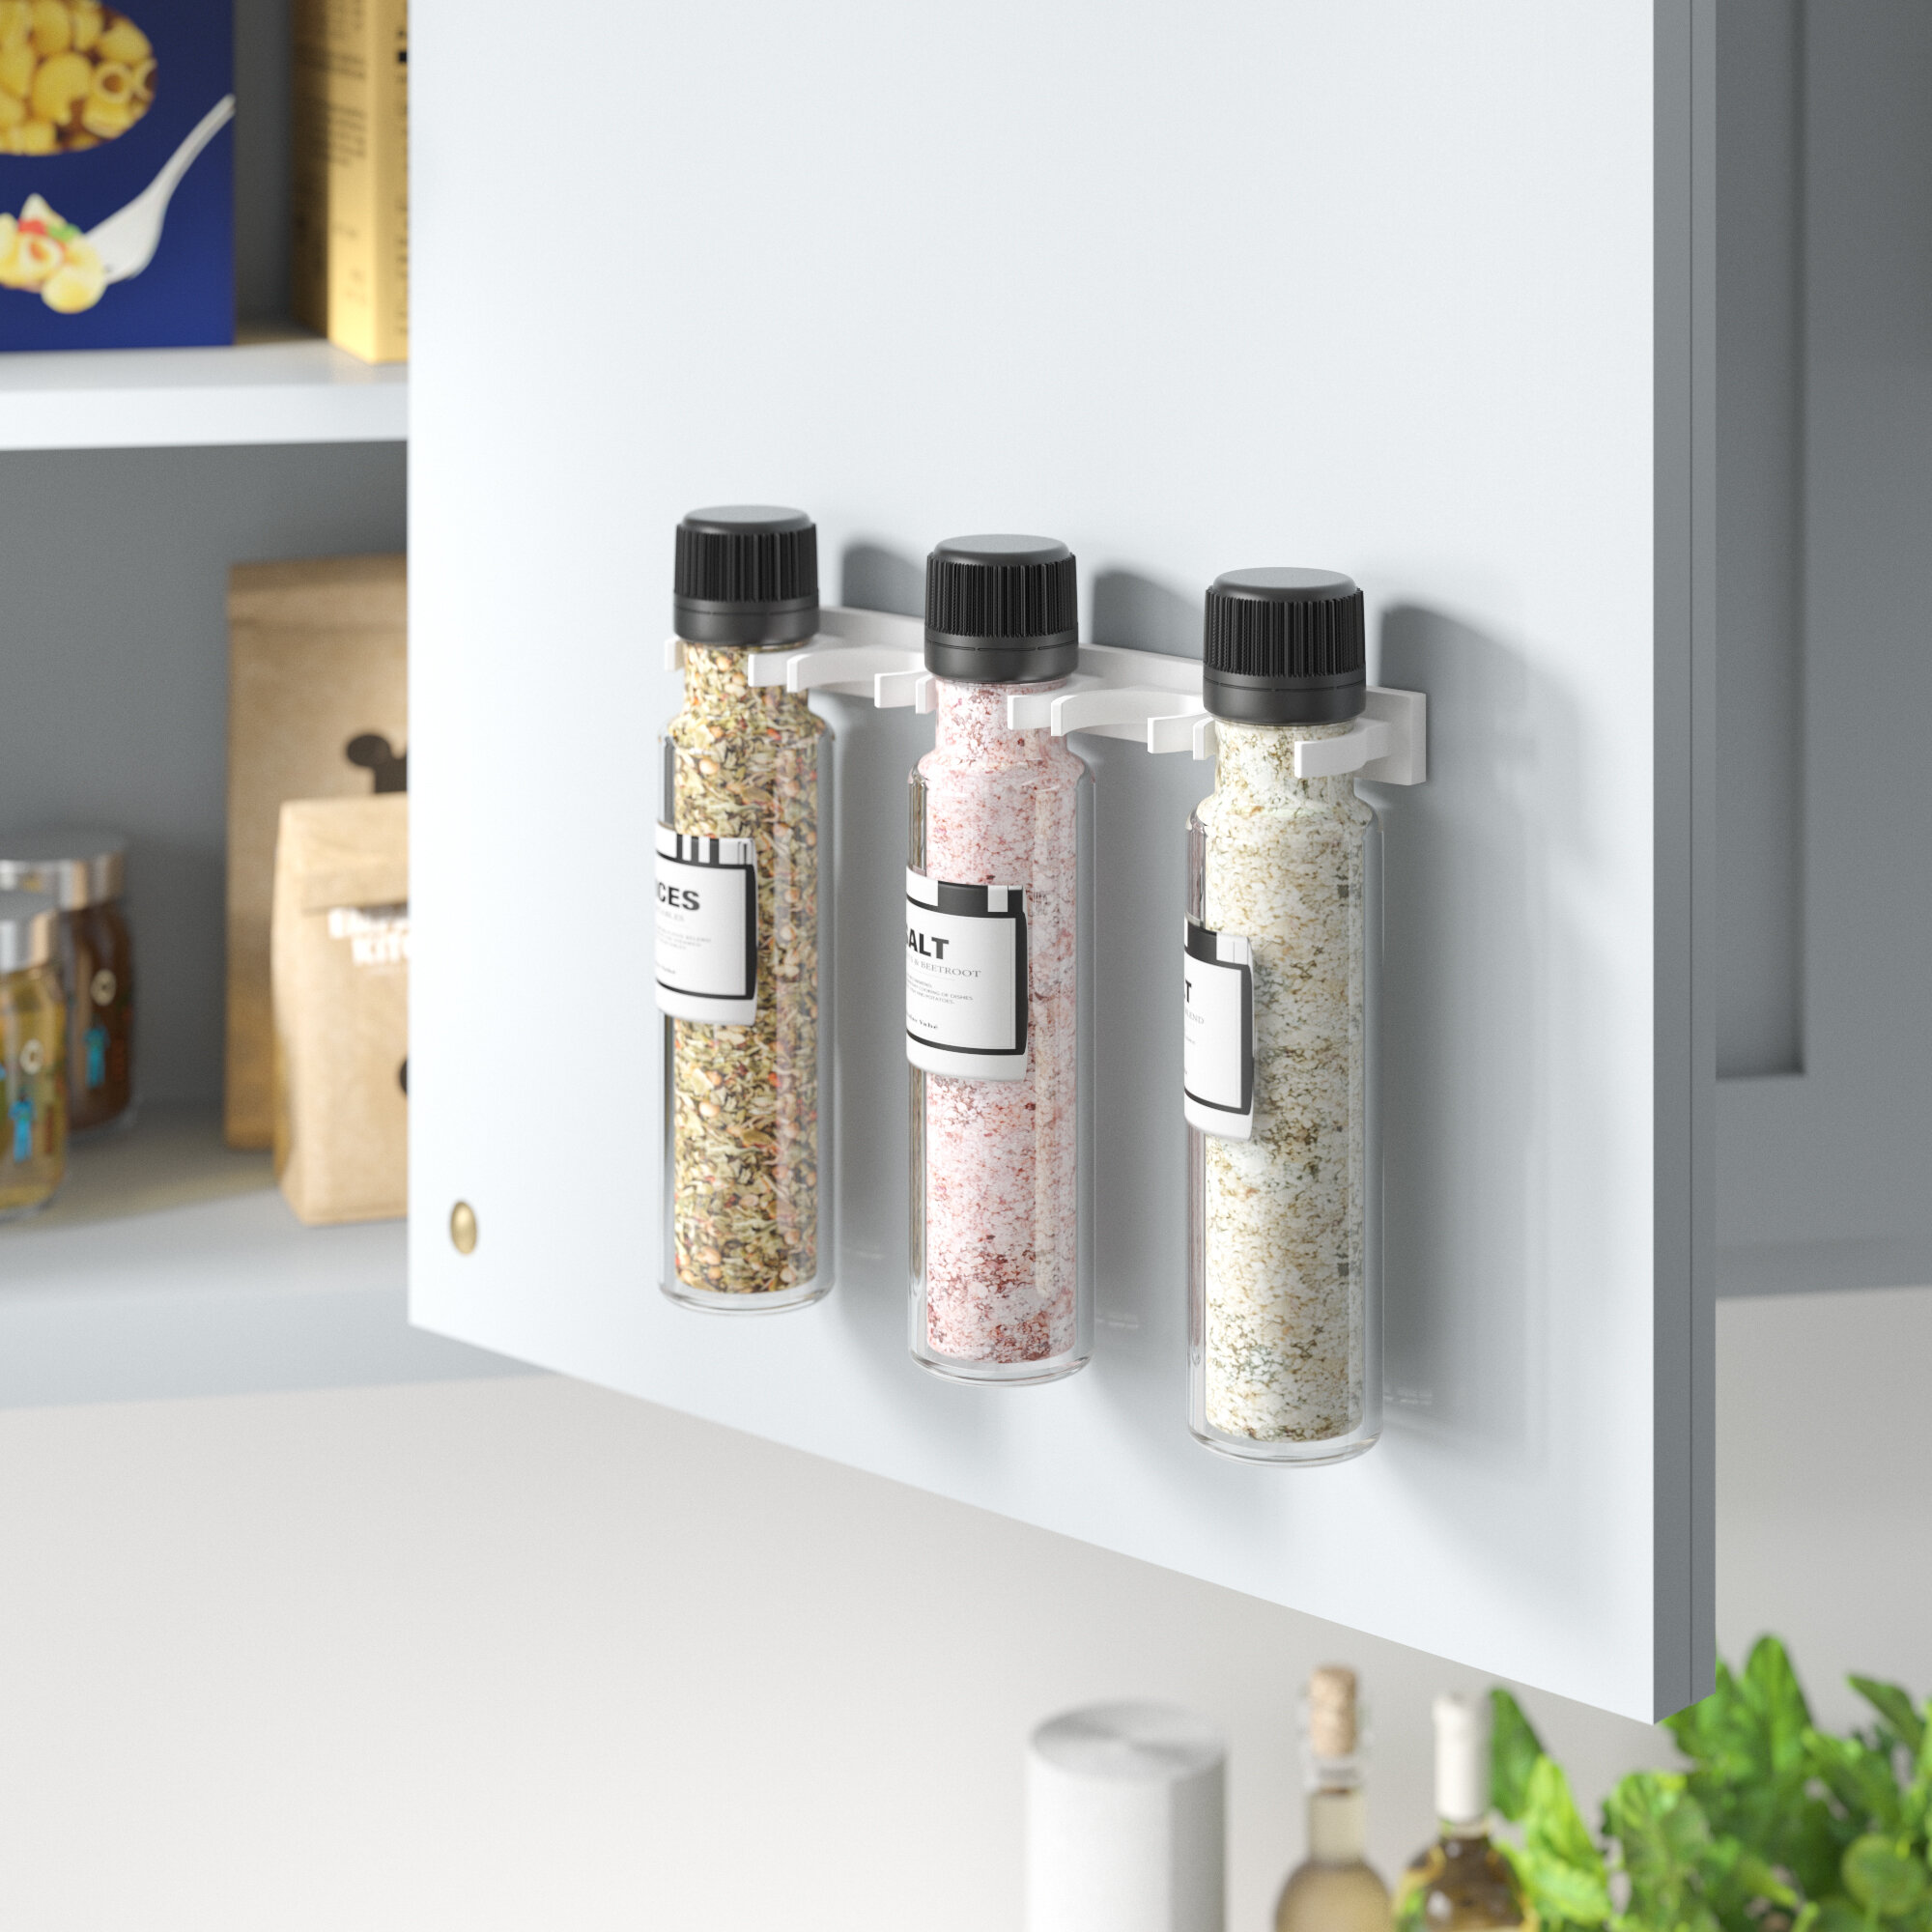 Rebrilliant Cabinet Door 20 Jar Spice Rack Reviews Wayfair Ca